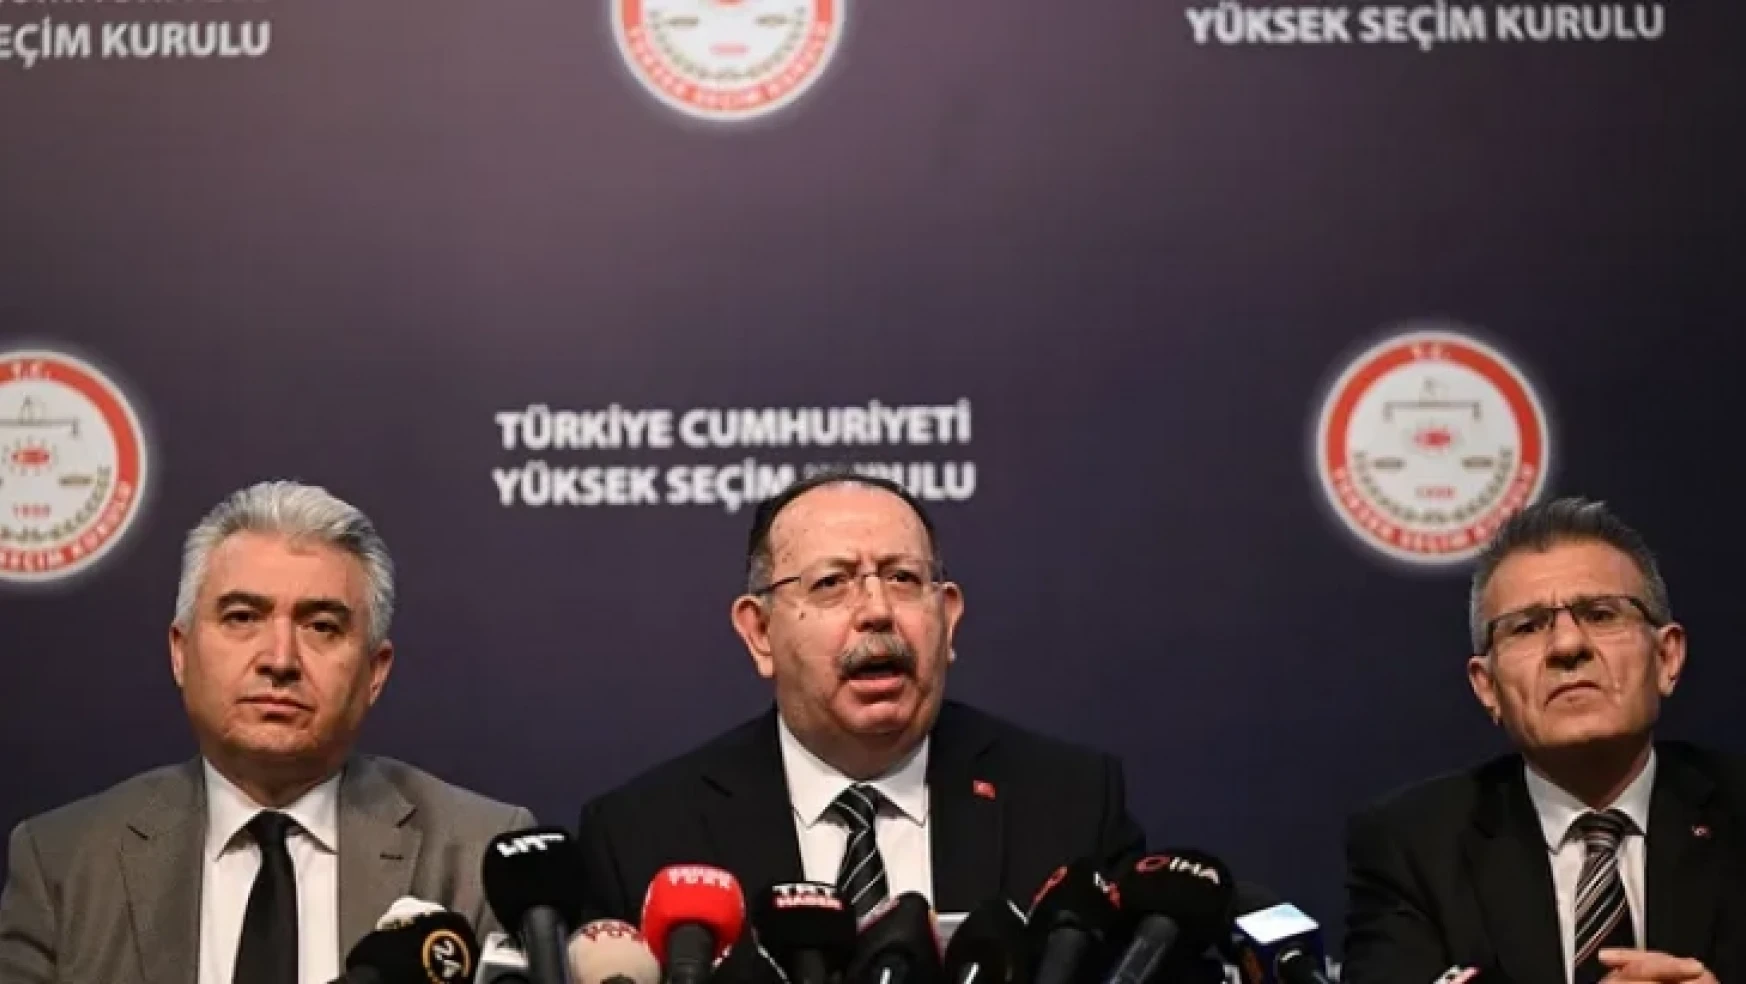 YSK Başkanı Yener: '(Cumhurbaşkanlığı ikinci tur oylaması) Türk siyasi hayatında ilk defa uygulanan bir süreç'